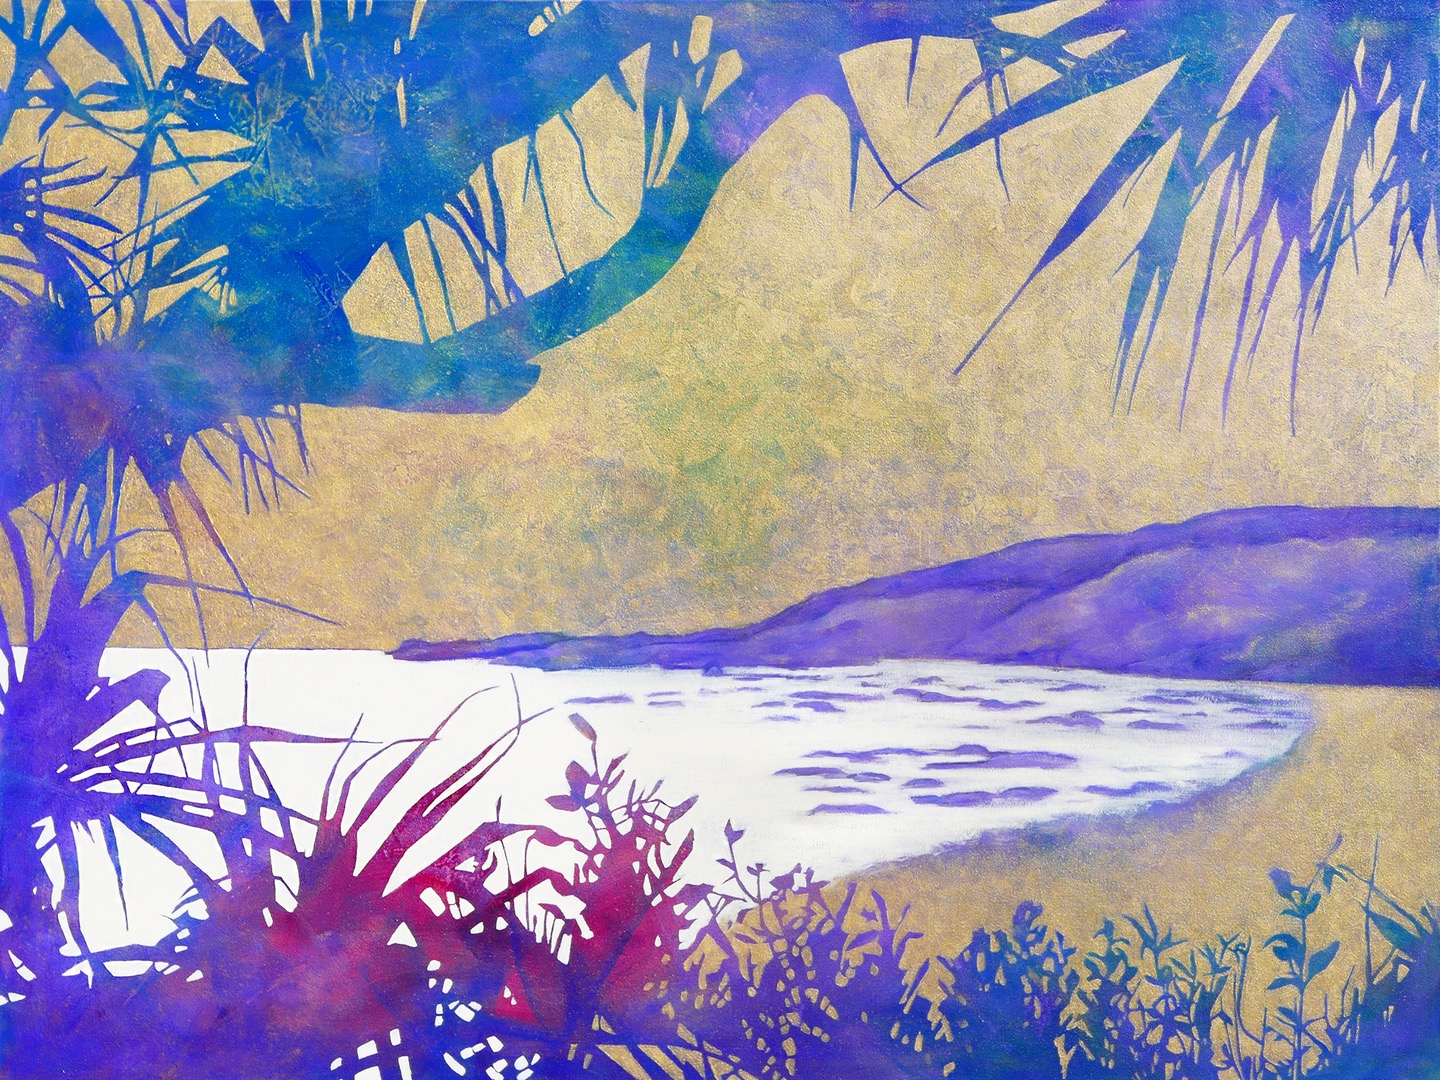 Beach scene painted in purple by Karyn Fendley